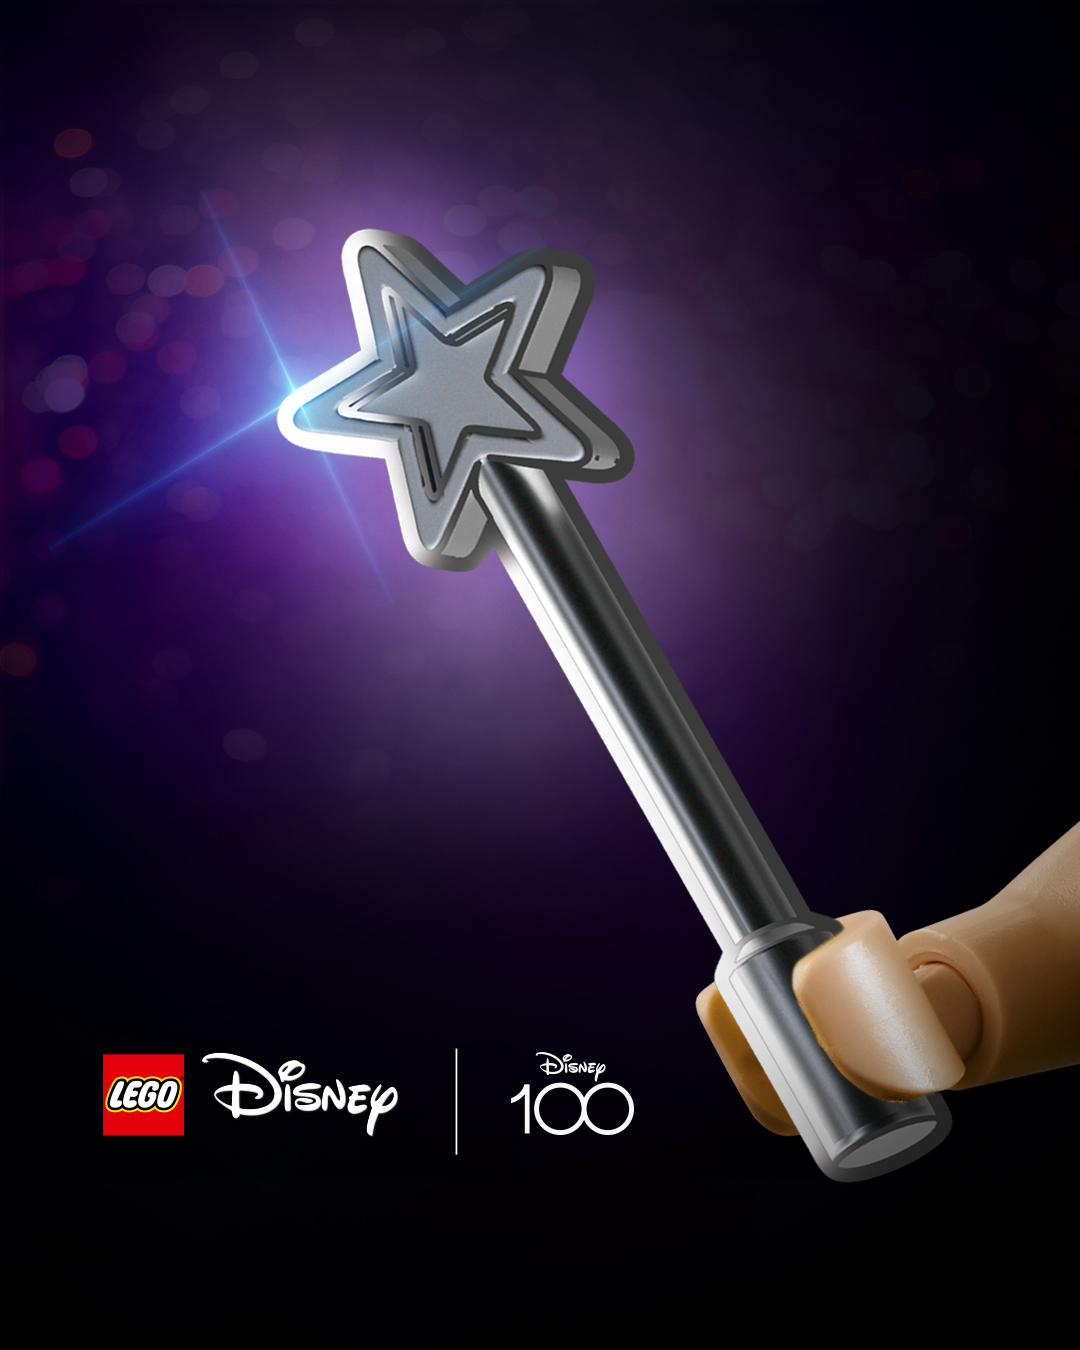 LEGO poursuit les célébrations Disney 100 avec des mini-figurines canons